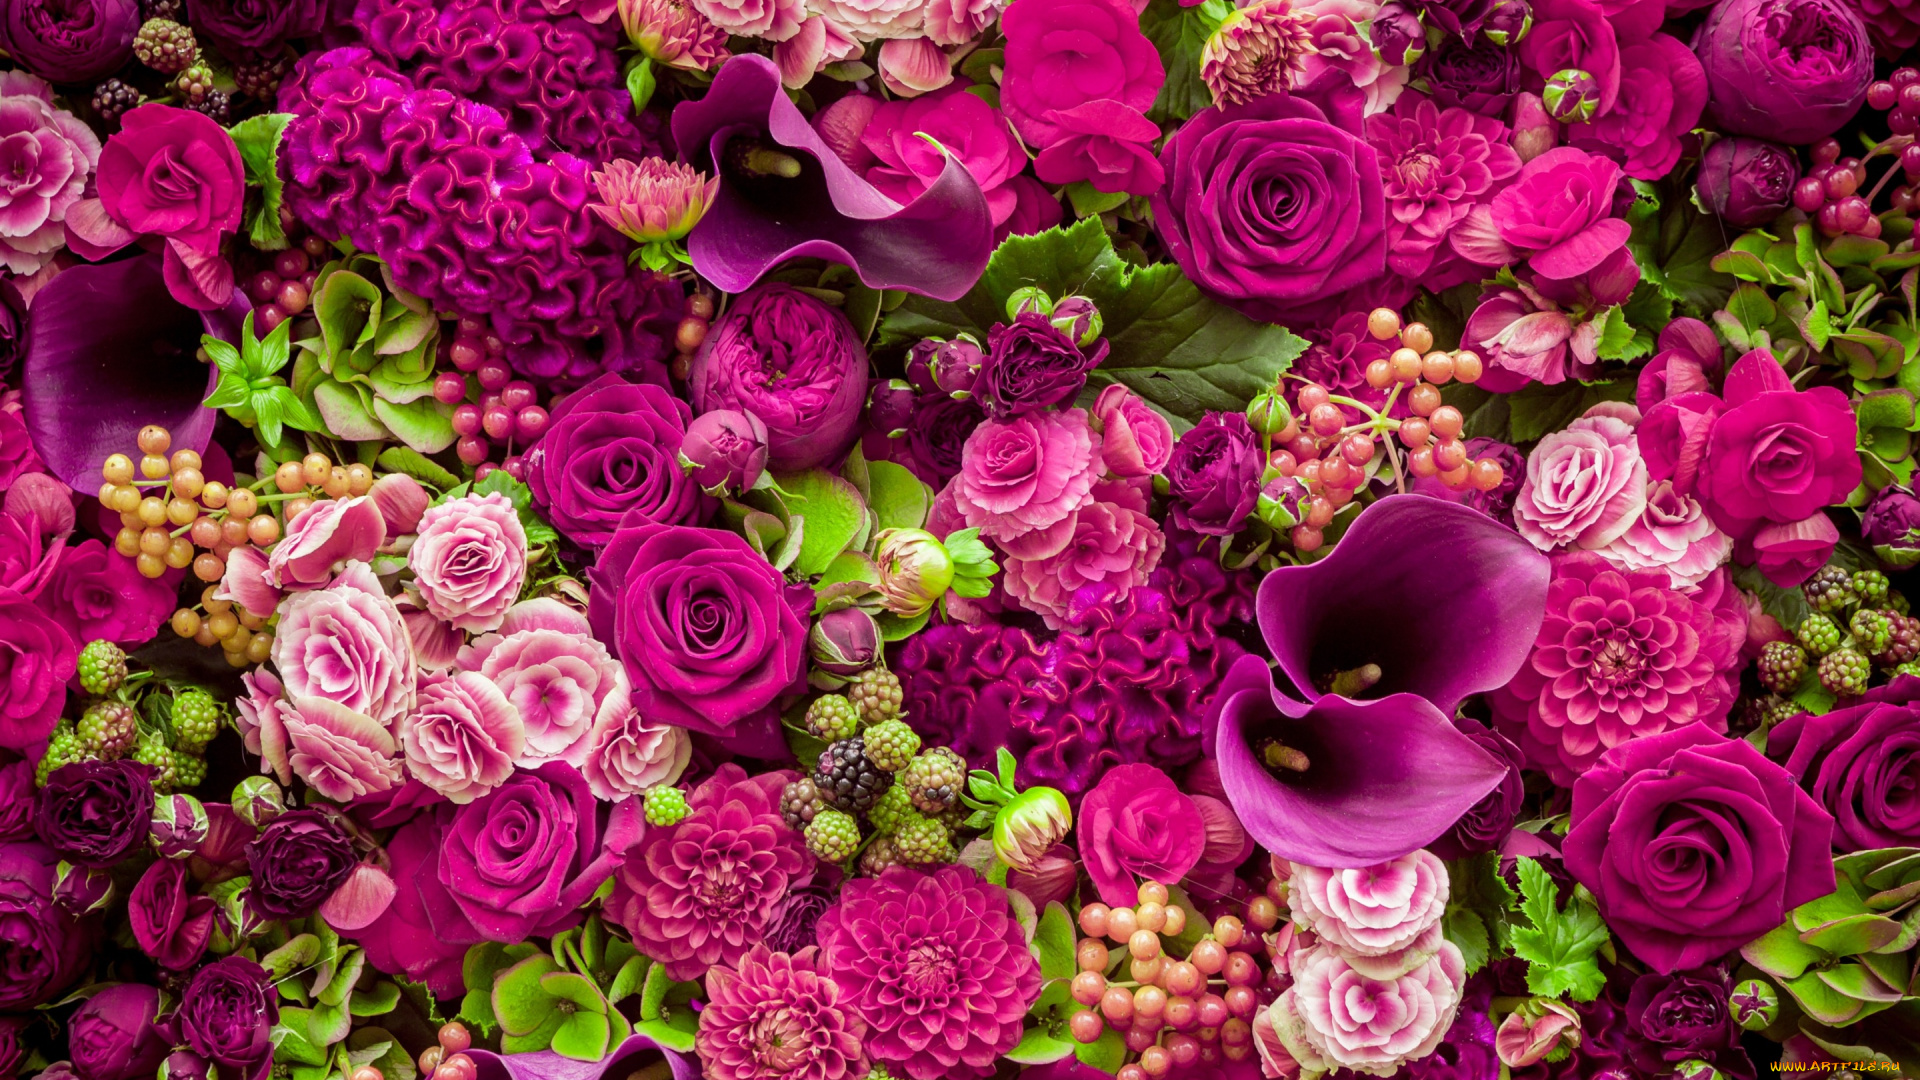 цветы, разные, вместе, roses, purple, romantic, pink, бутоны, розовые, розы, flowers, beautiful